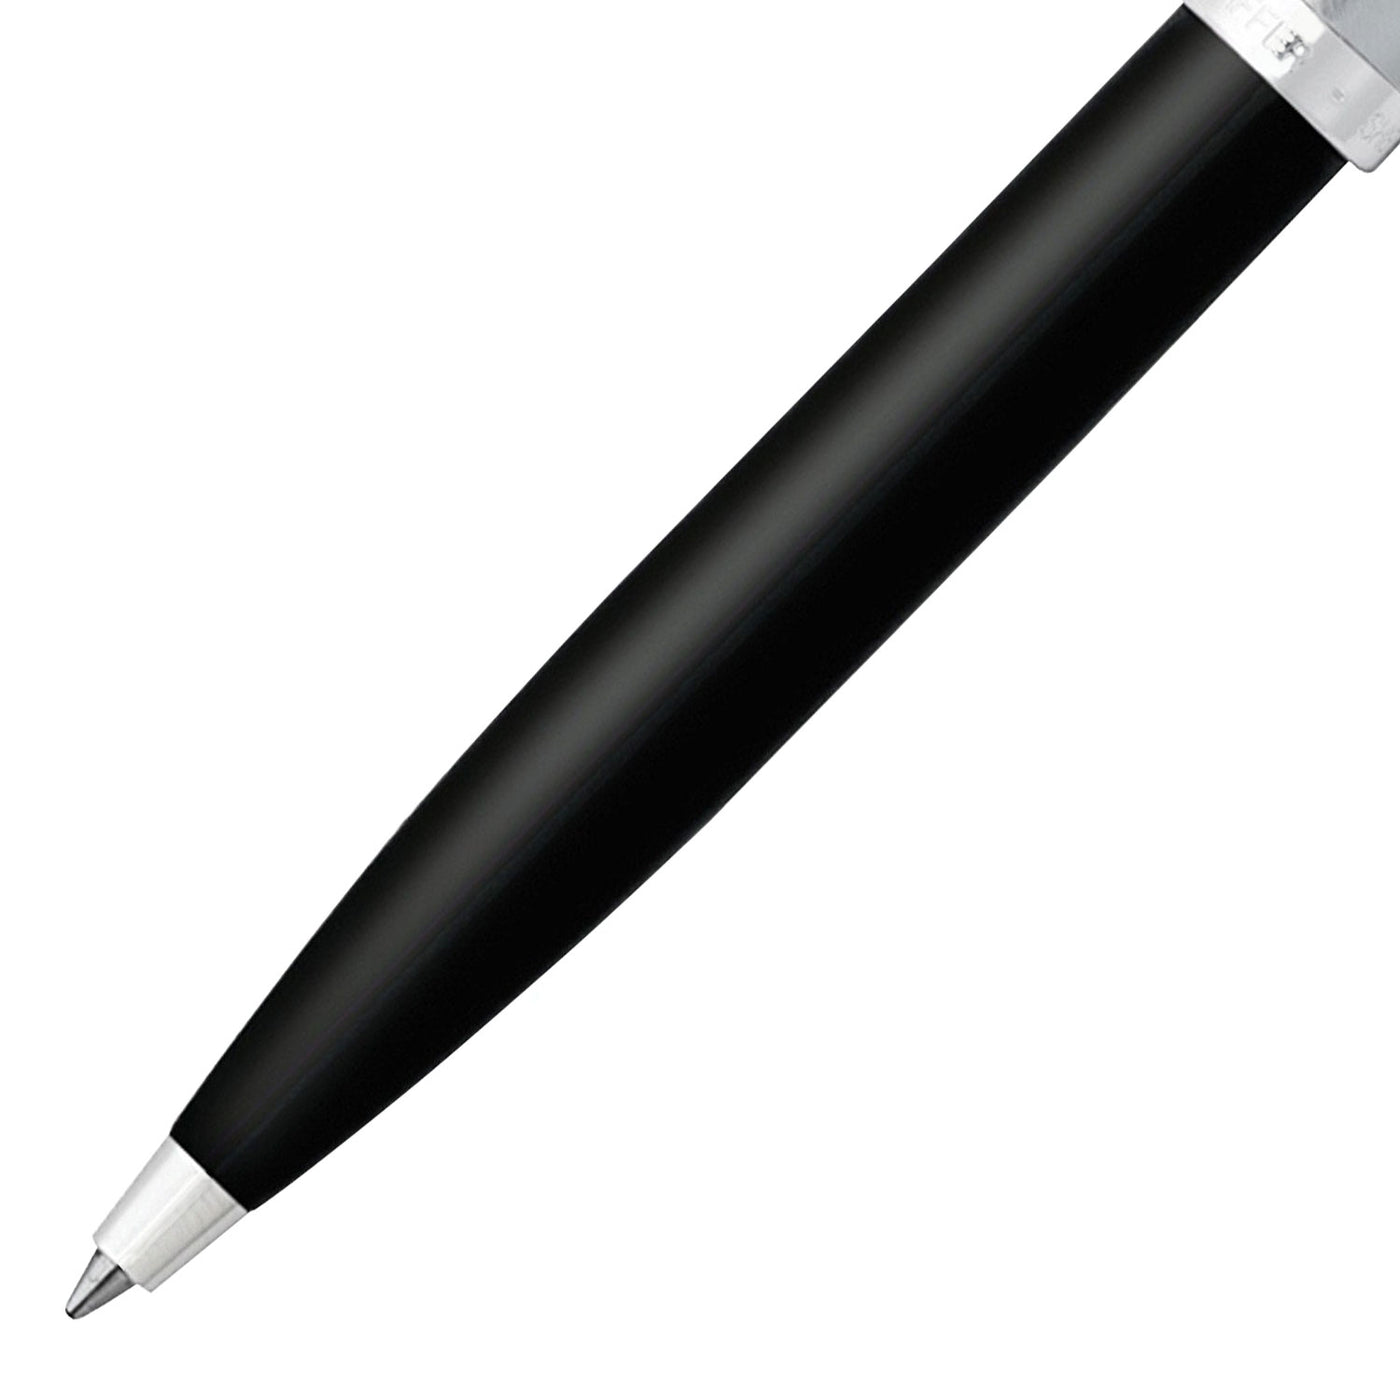 Sheaffer 100 Ball Pen - Black & Brushed Chrome 4